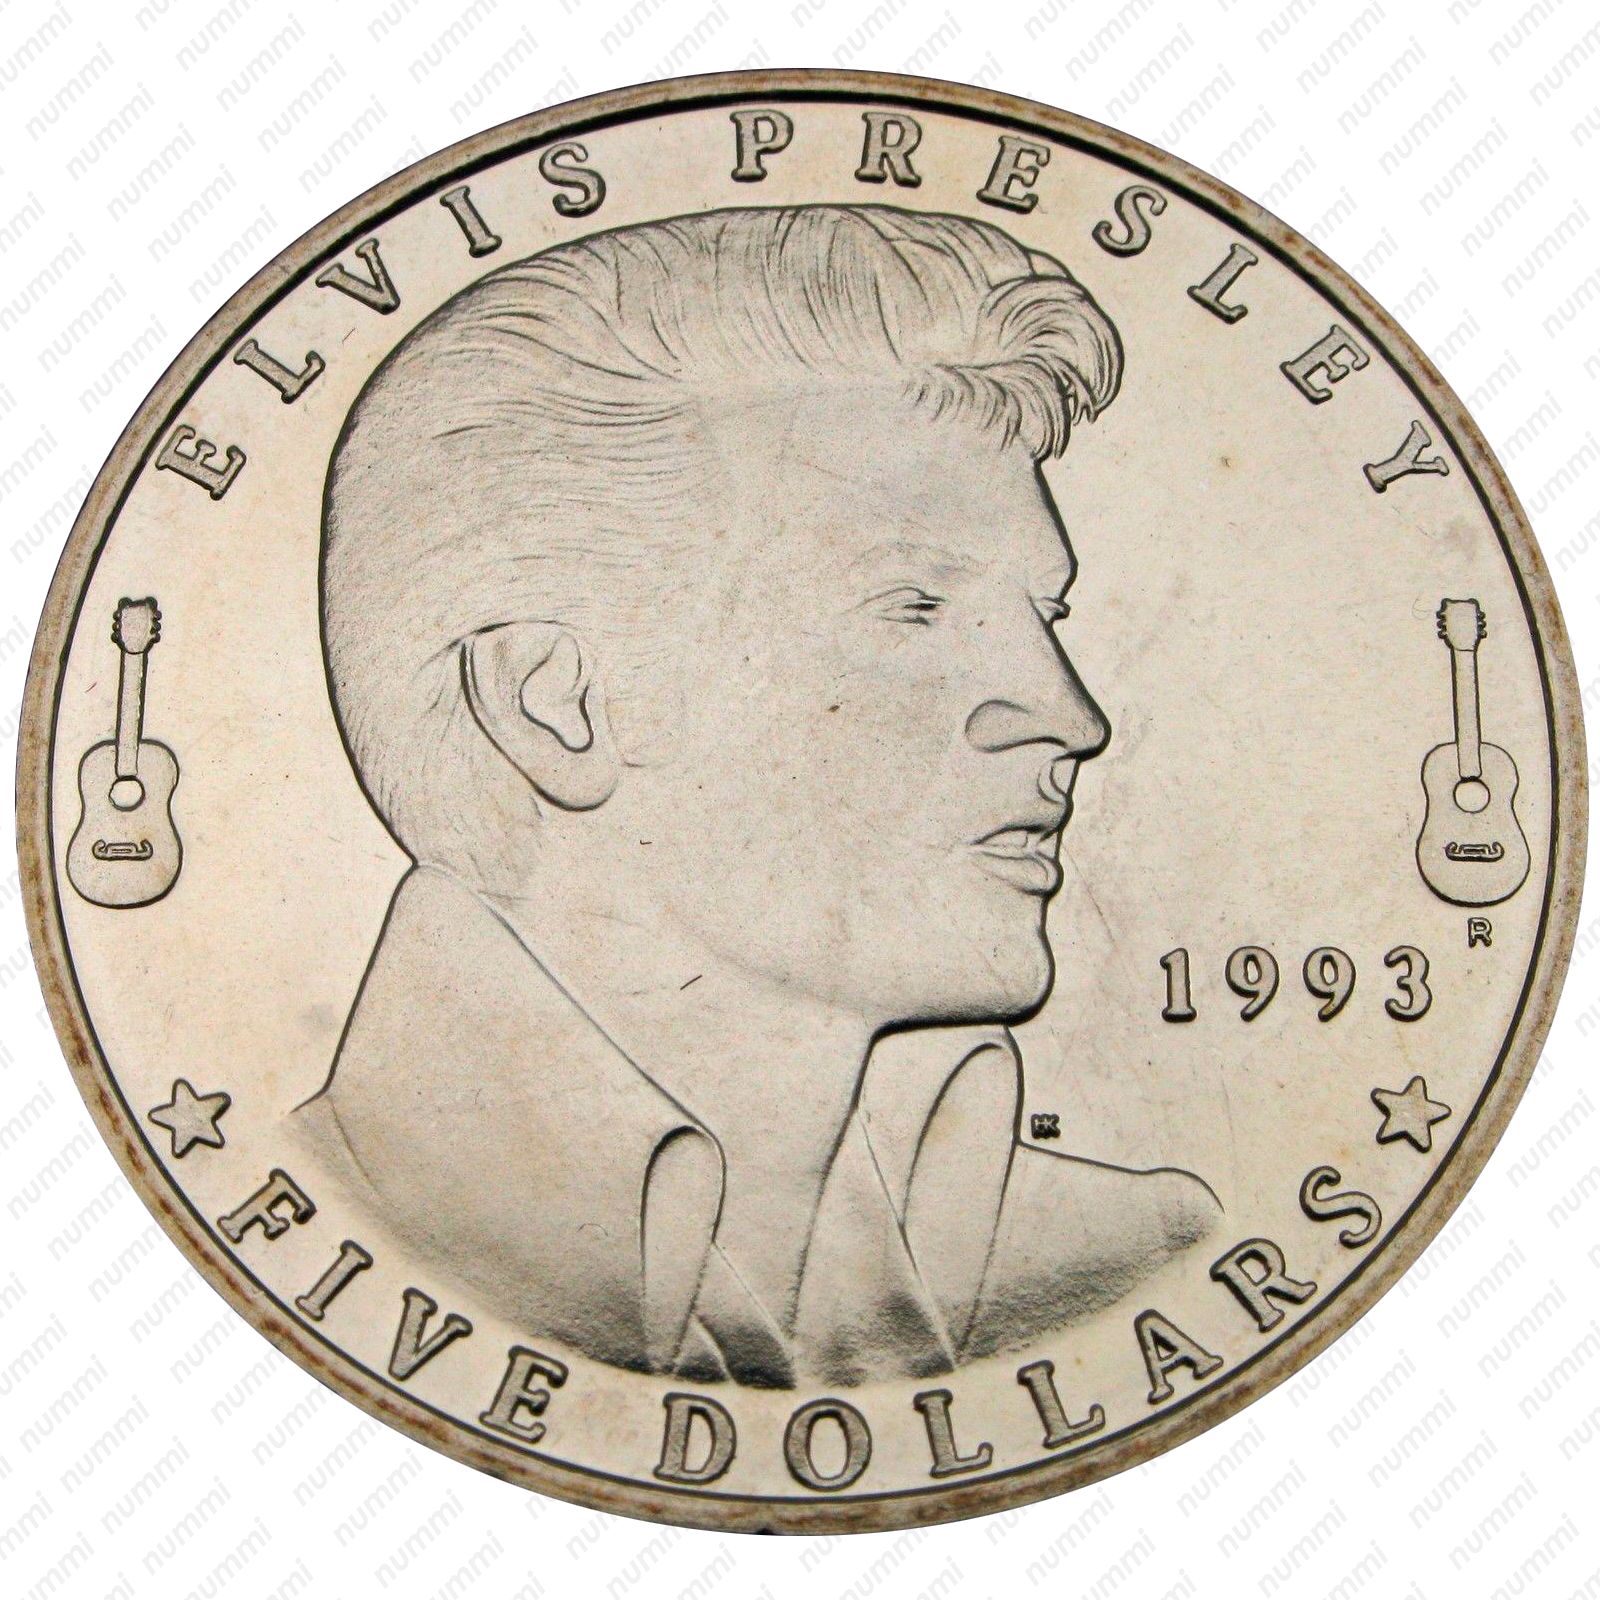 5 Долларов 1993. Марка 1993 года с Элвис. Quattro Dollar 1993. Купюра с Элвисом Пресли 1993.